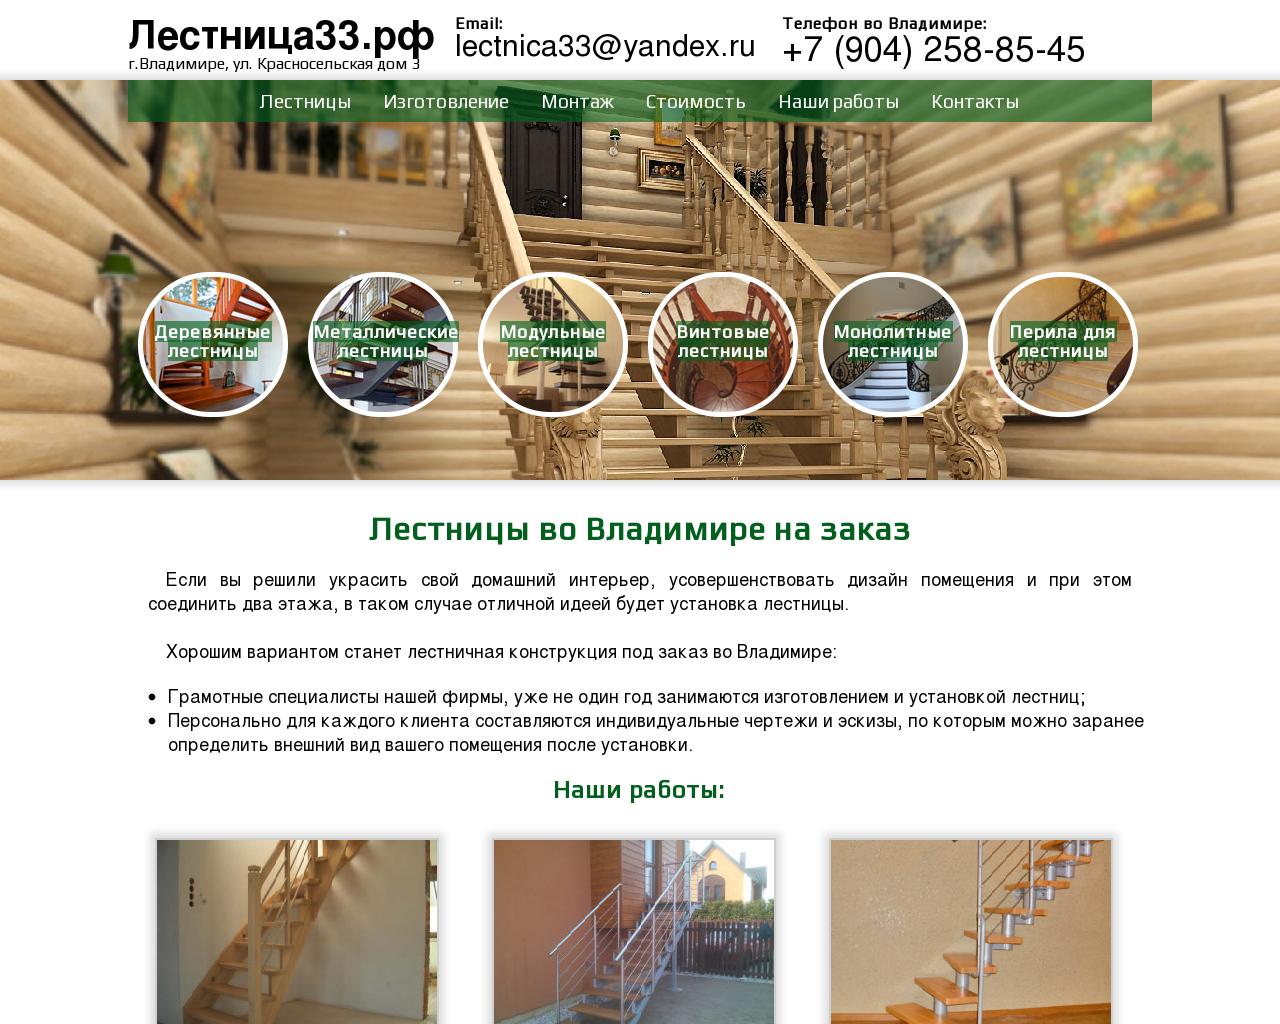 Изображение сайта лестница33.рф в разрешении 1280x1024